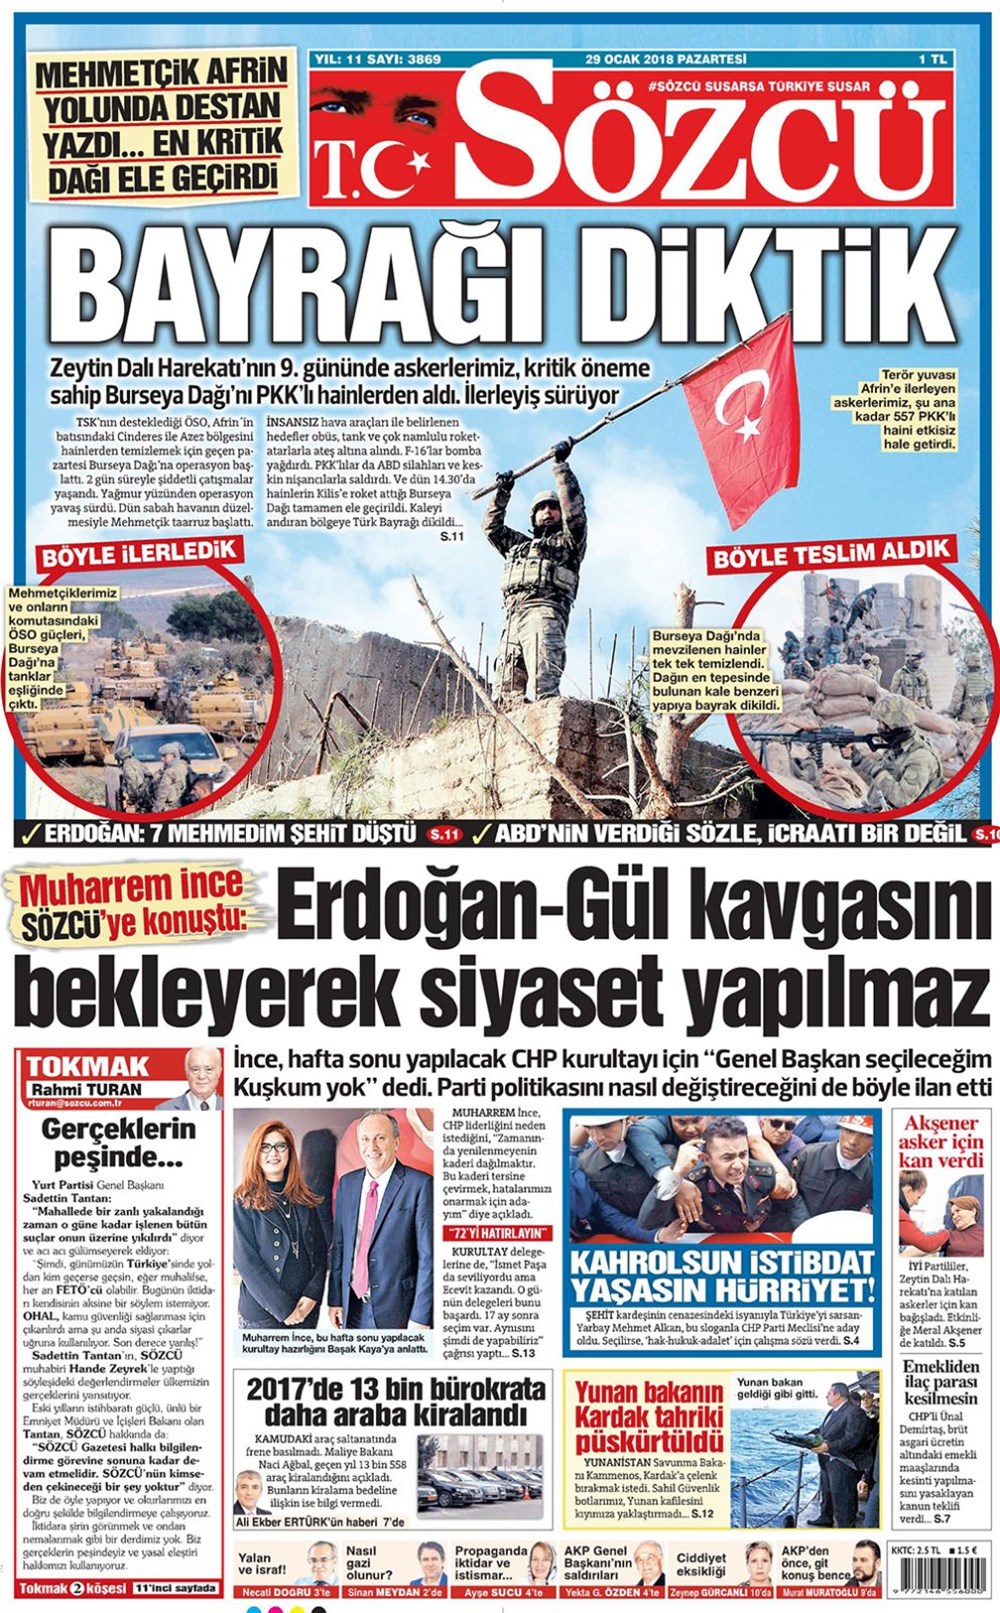 Gunun Gazete Mansetleri 29 Ocak 2018 Son Dakika Turkiye Haberleri Ntv Haber